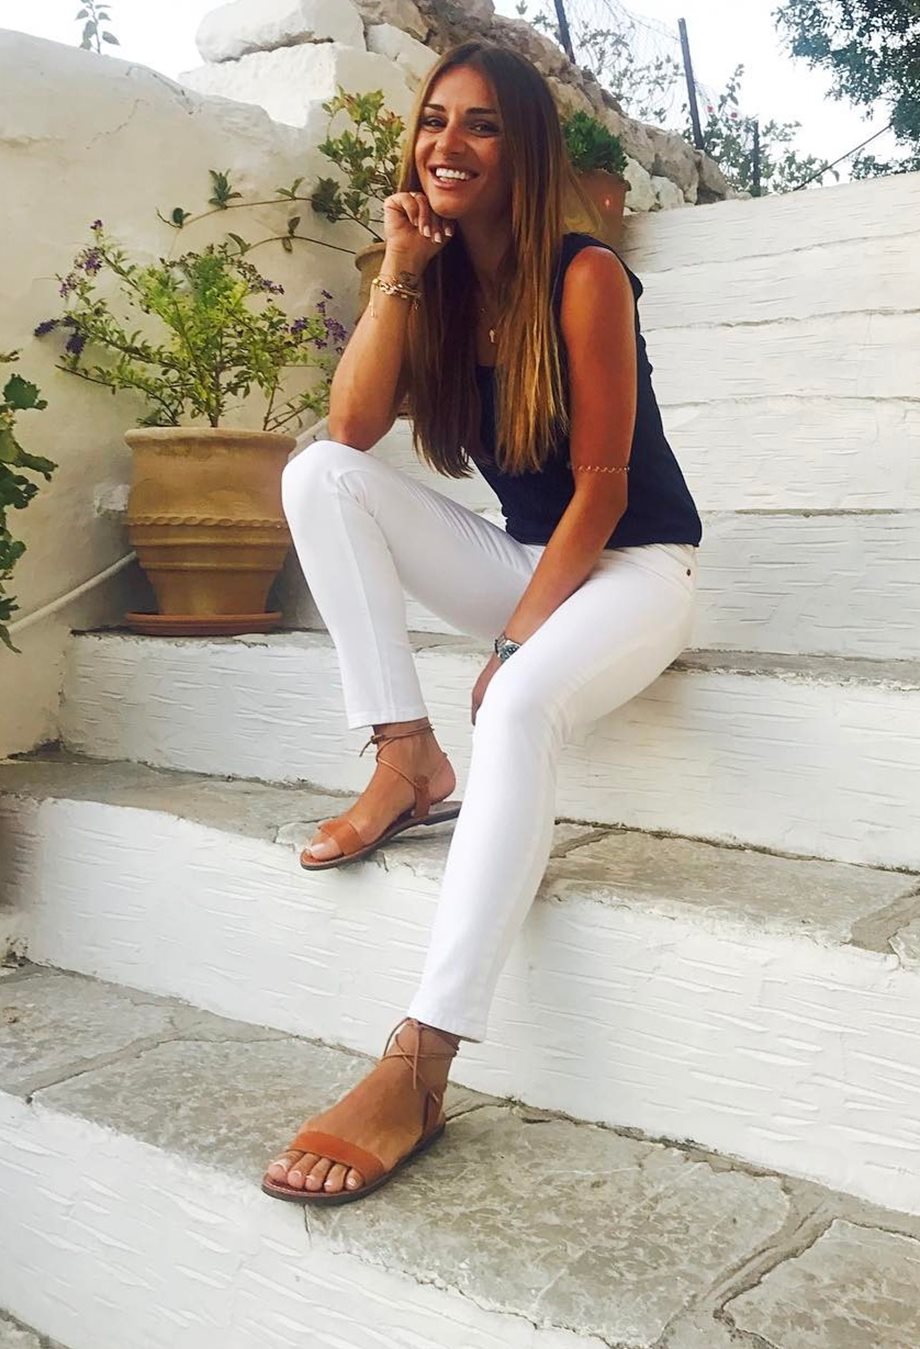 Η Ελένη Τσολάκη δημοσίευσε την πρώτη φωτογραφία της με μαγιό από τις φετινές της διακοπές